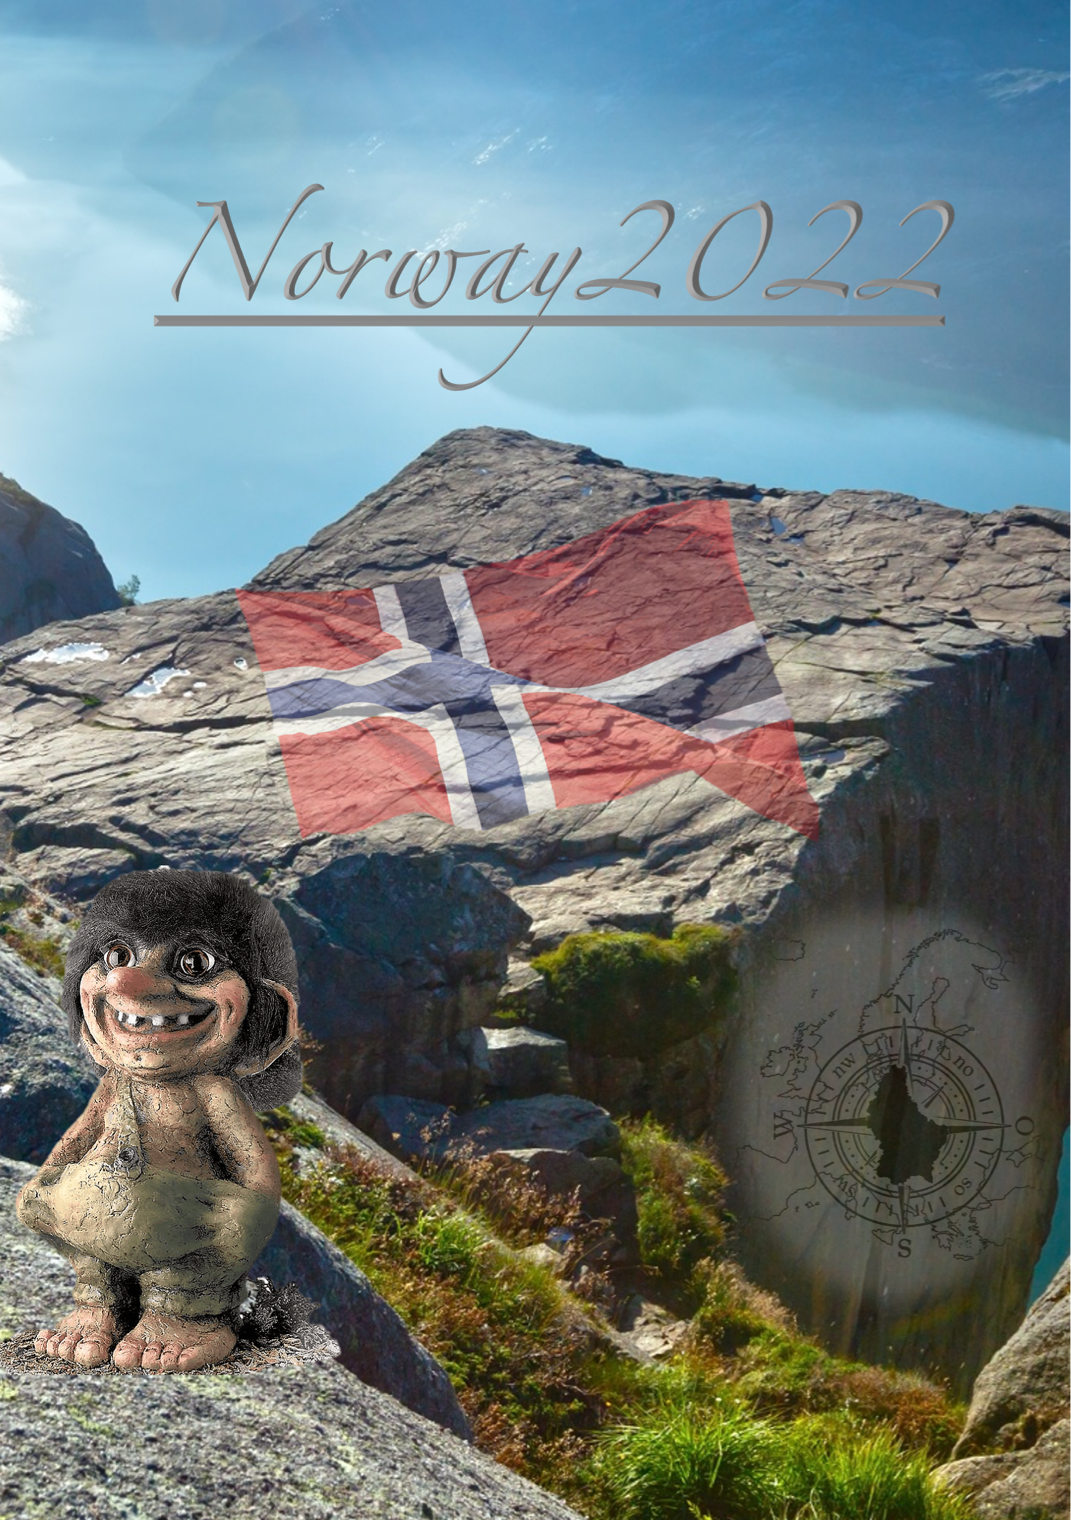 Noorwegen 2022